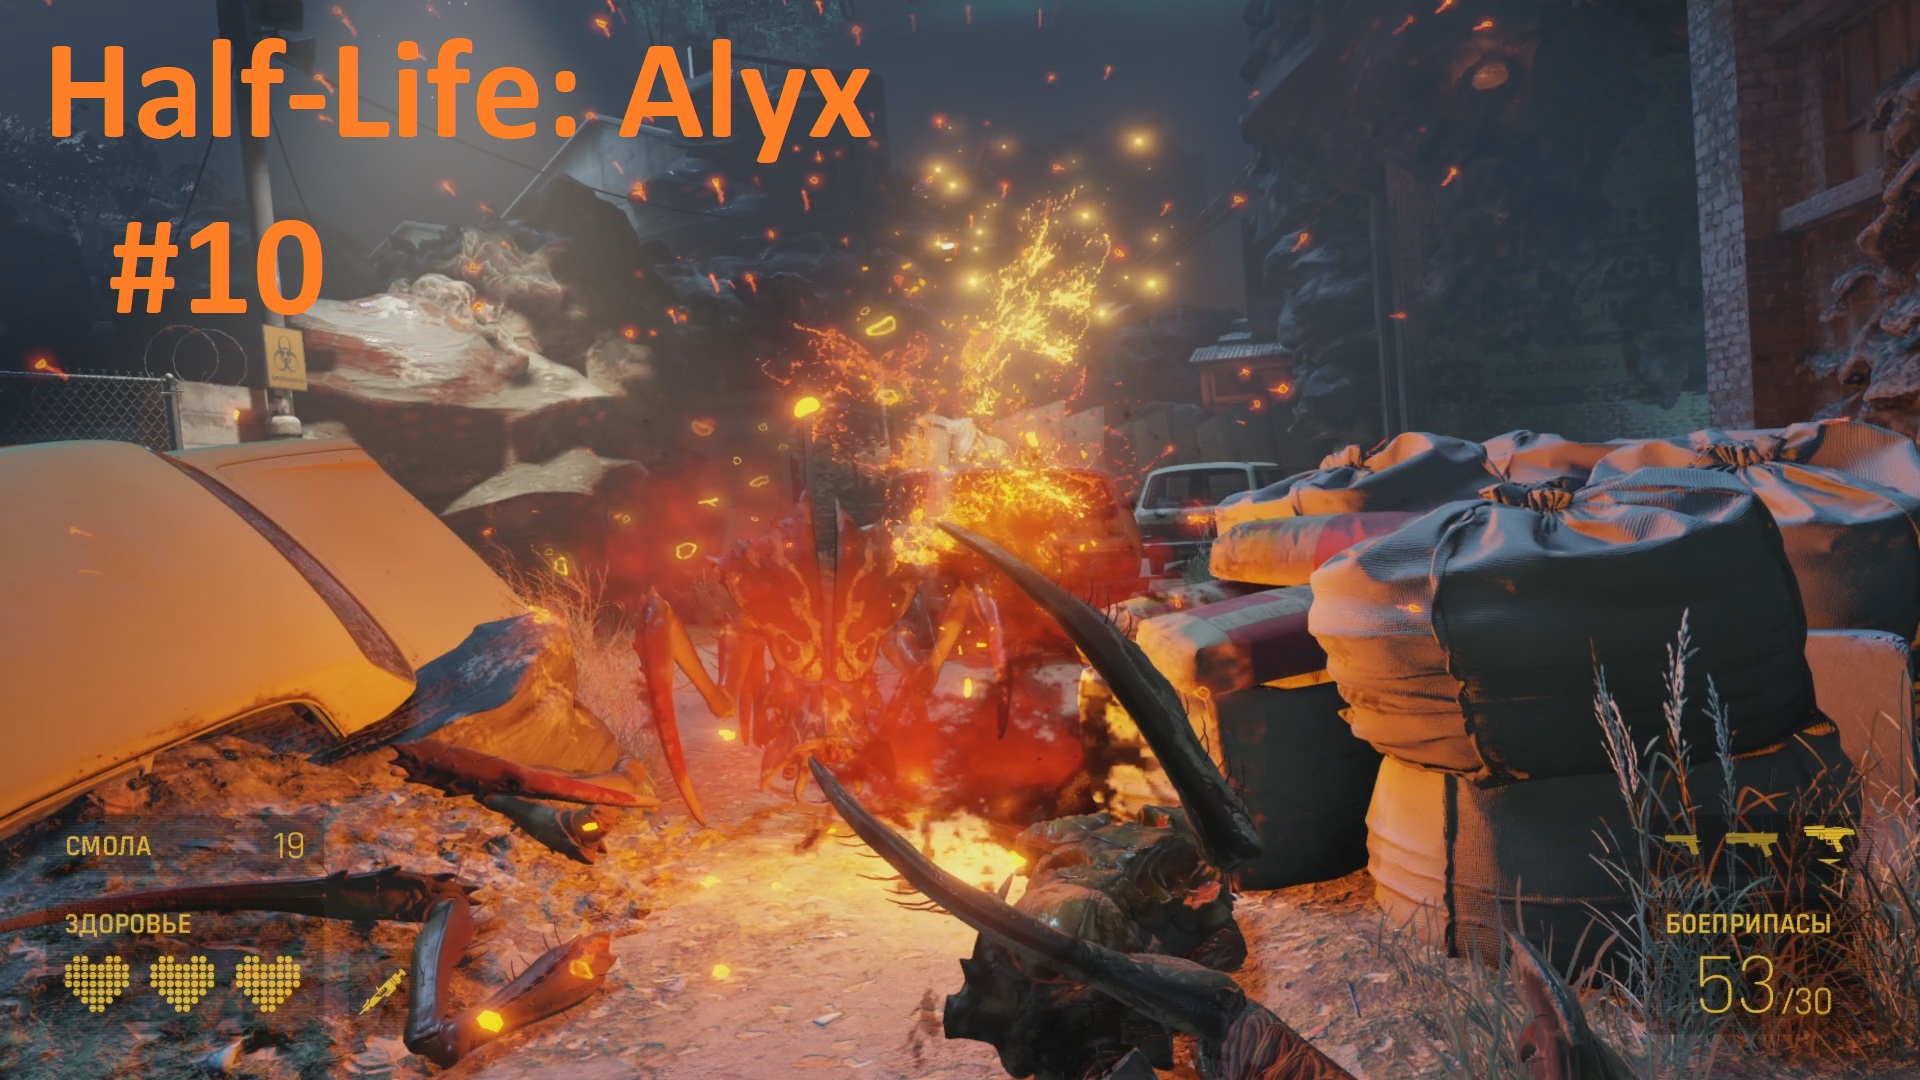 Ногастики-новые обитатели нашего зоопарка ► VR Half-Life: ALYX #10